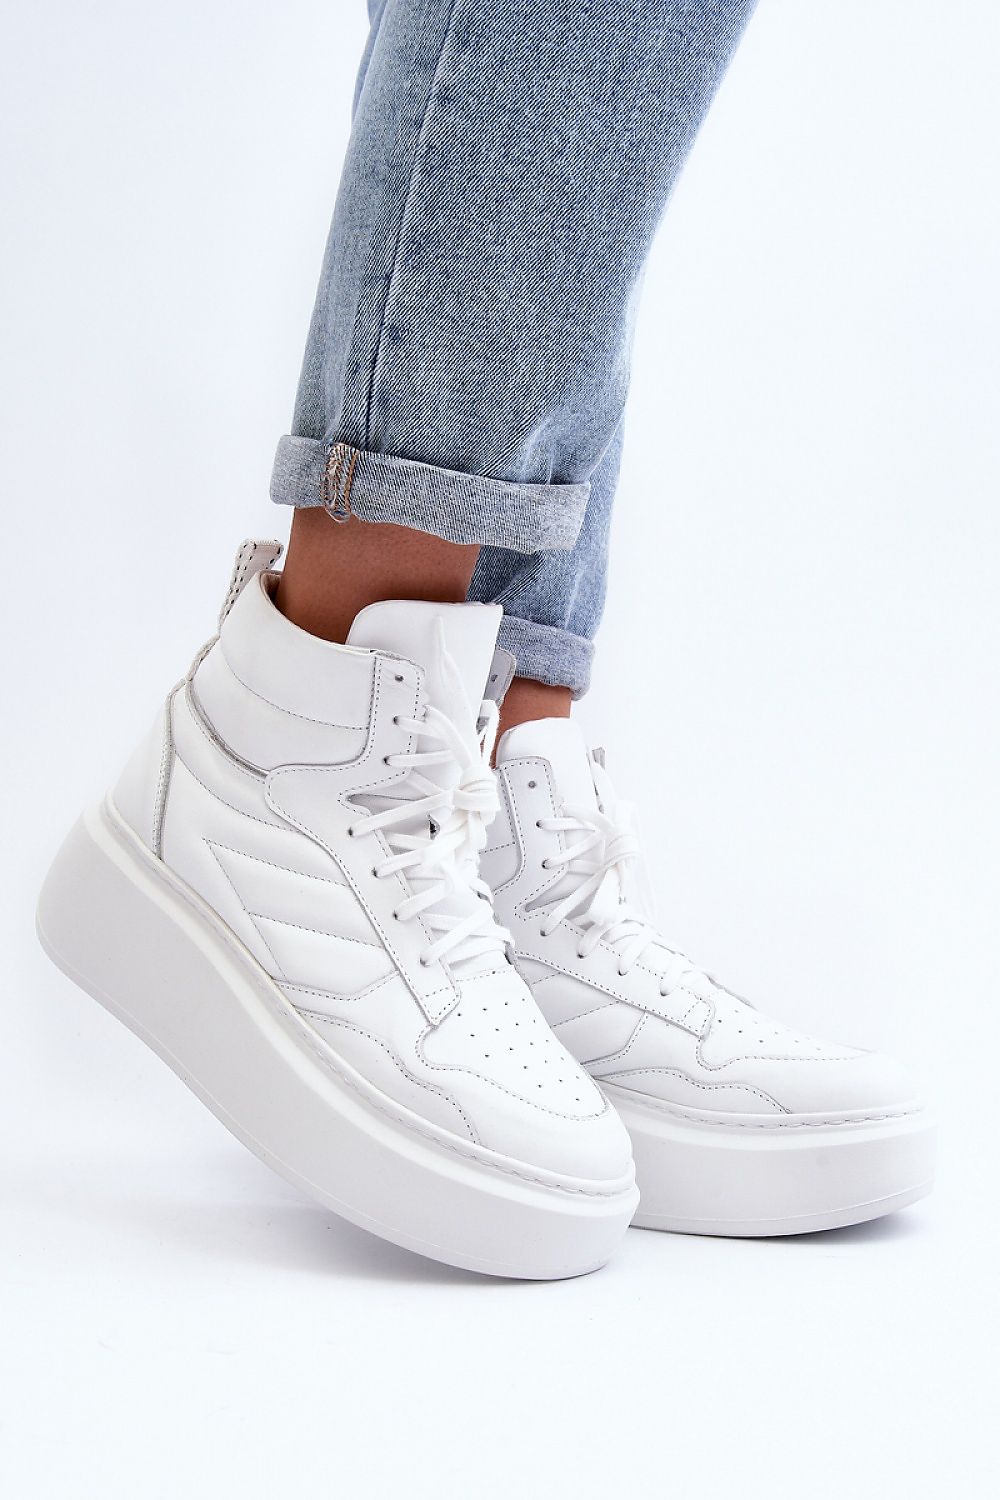 TEEK - Elavate Solid Sneakers SHOES TEEK MH white 6.5 